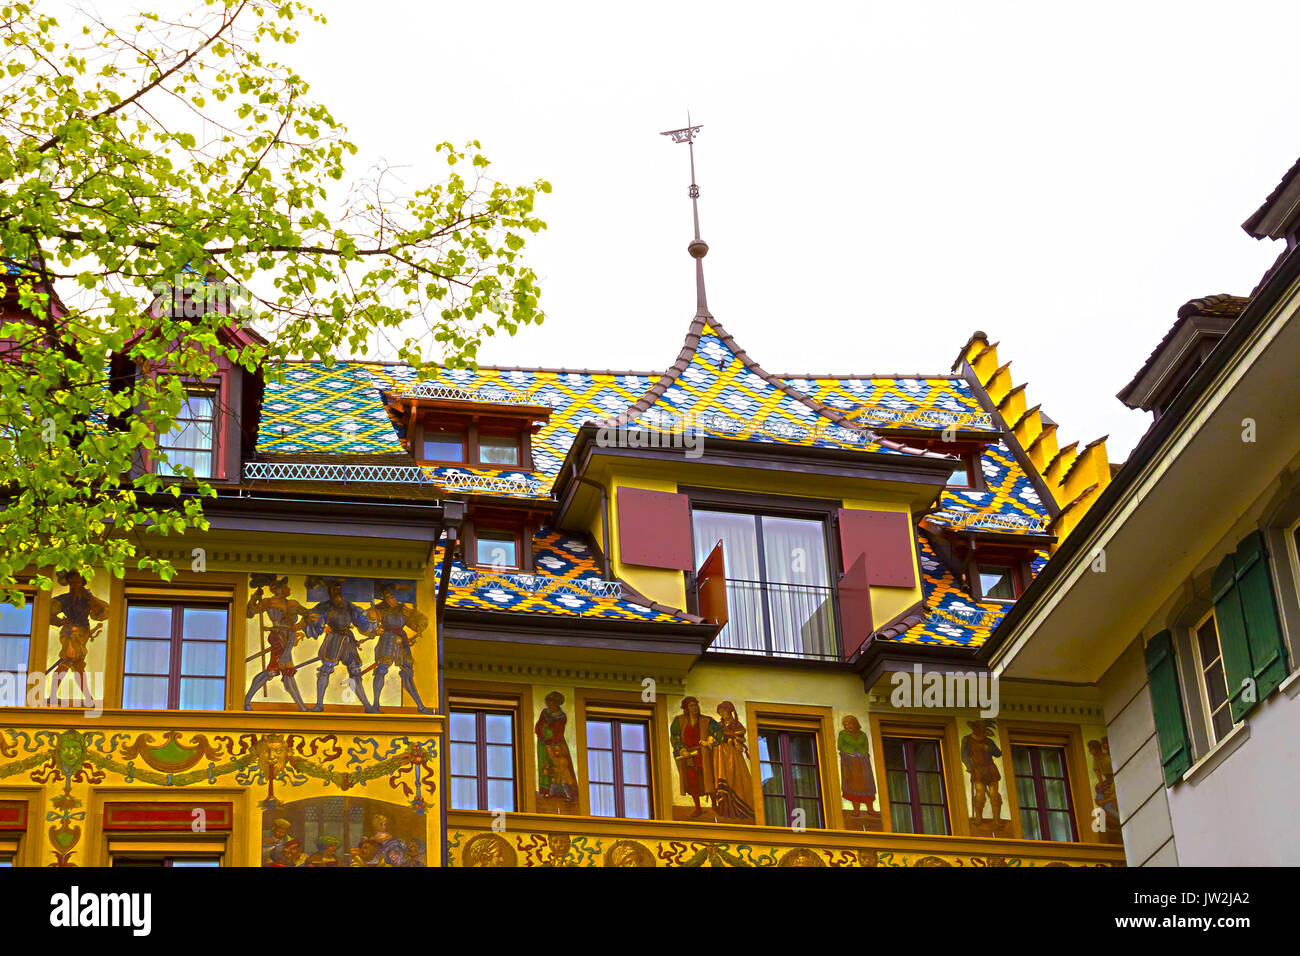 Wunderschön bemalte Fassade mit Fensterläden in der Altstadt von Luzern,  Schweiz Stockfotografie - Alamy